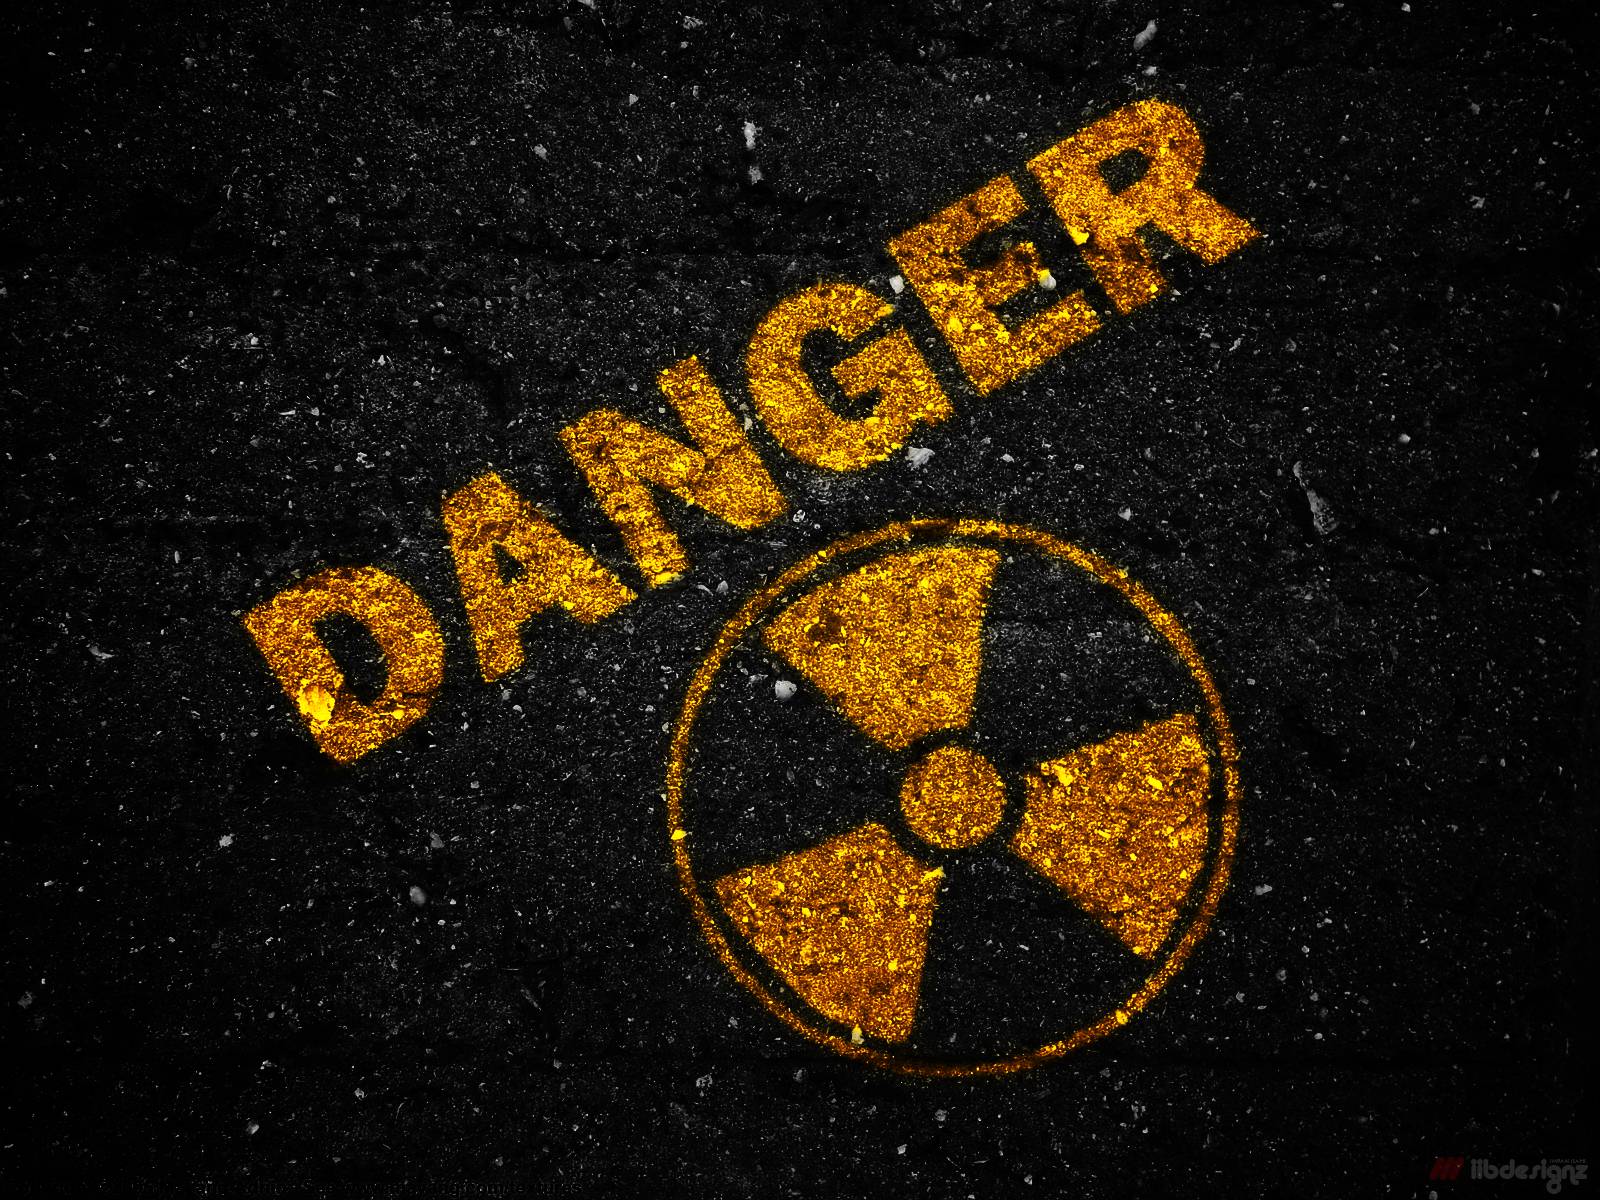 Danger Danger Wallpapers